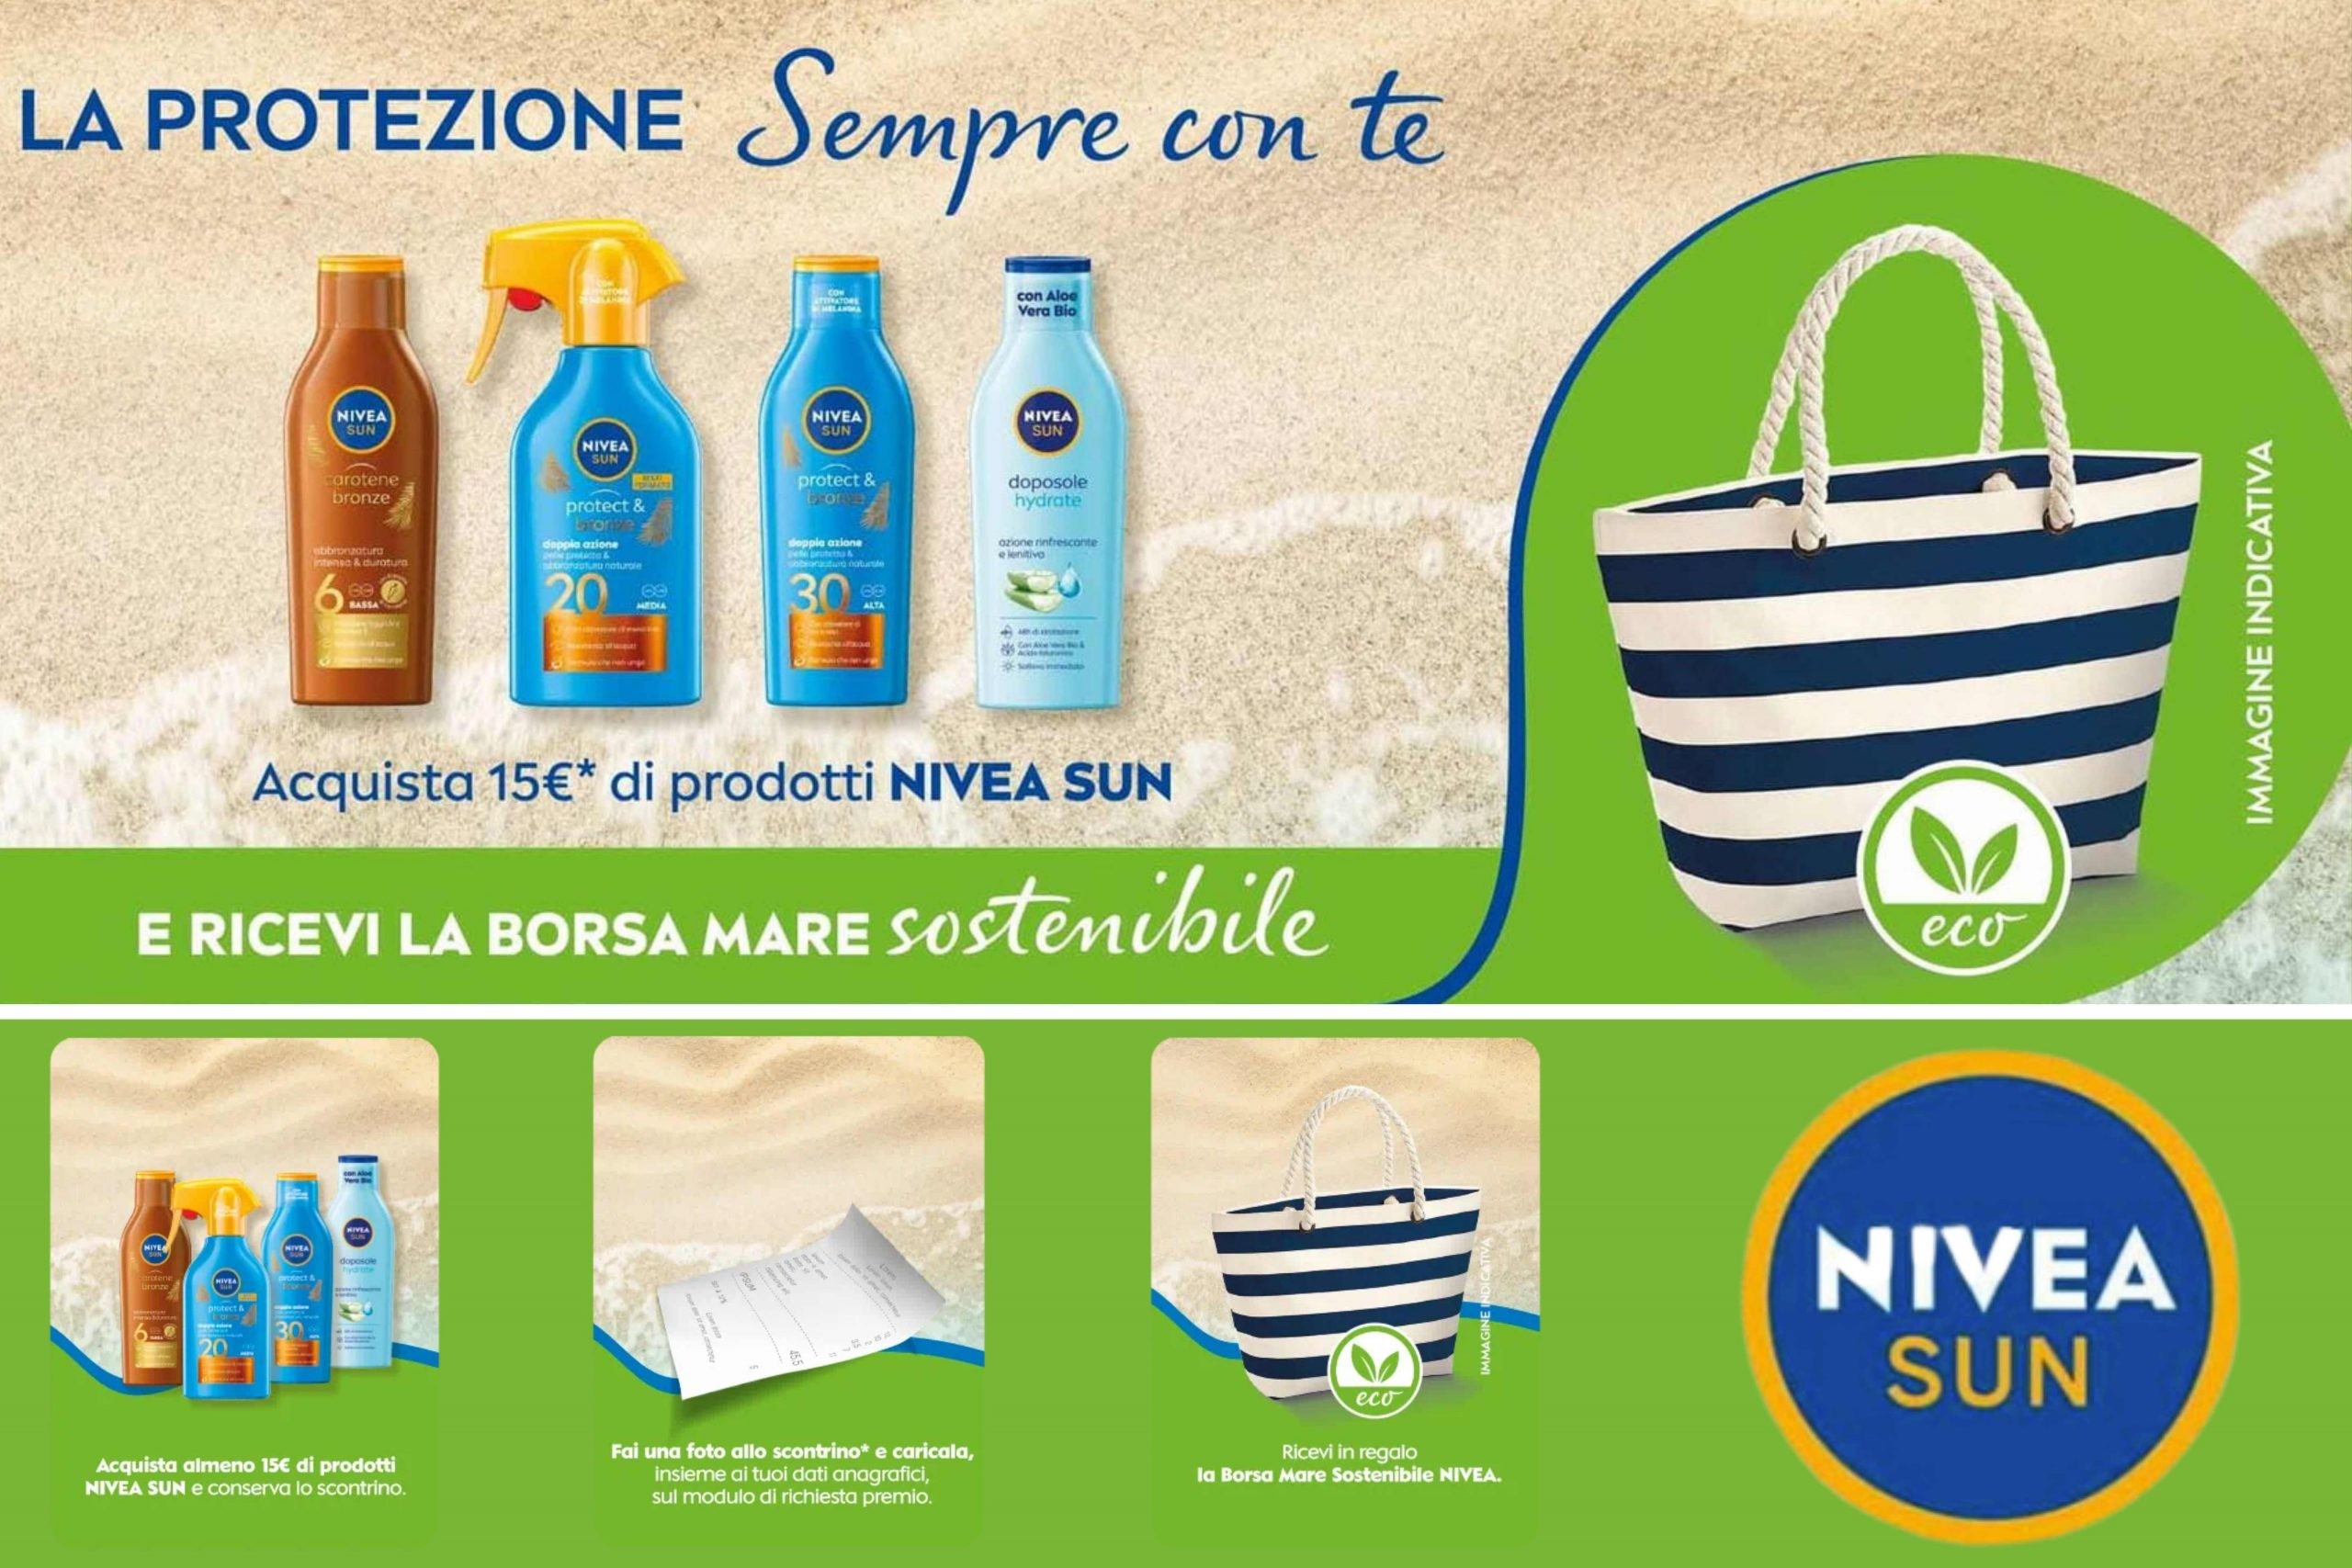 Concorso “Nivea Sun Ti regala la borsa da spiaggia”: borsa sostenibile come premio sicuro